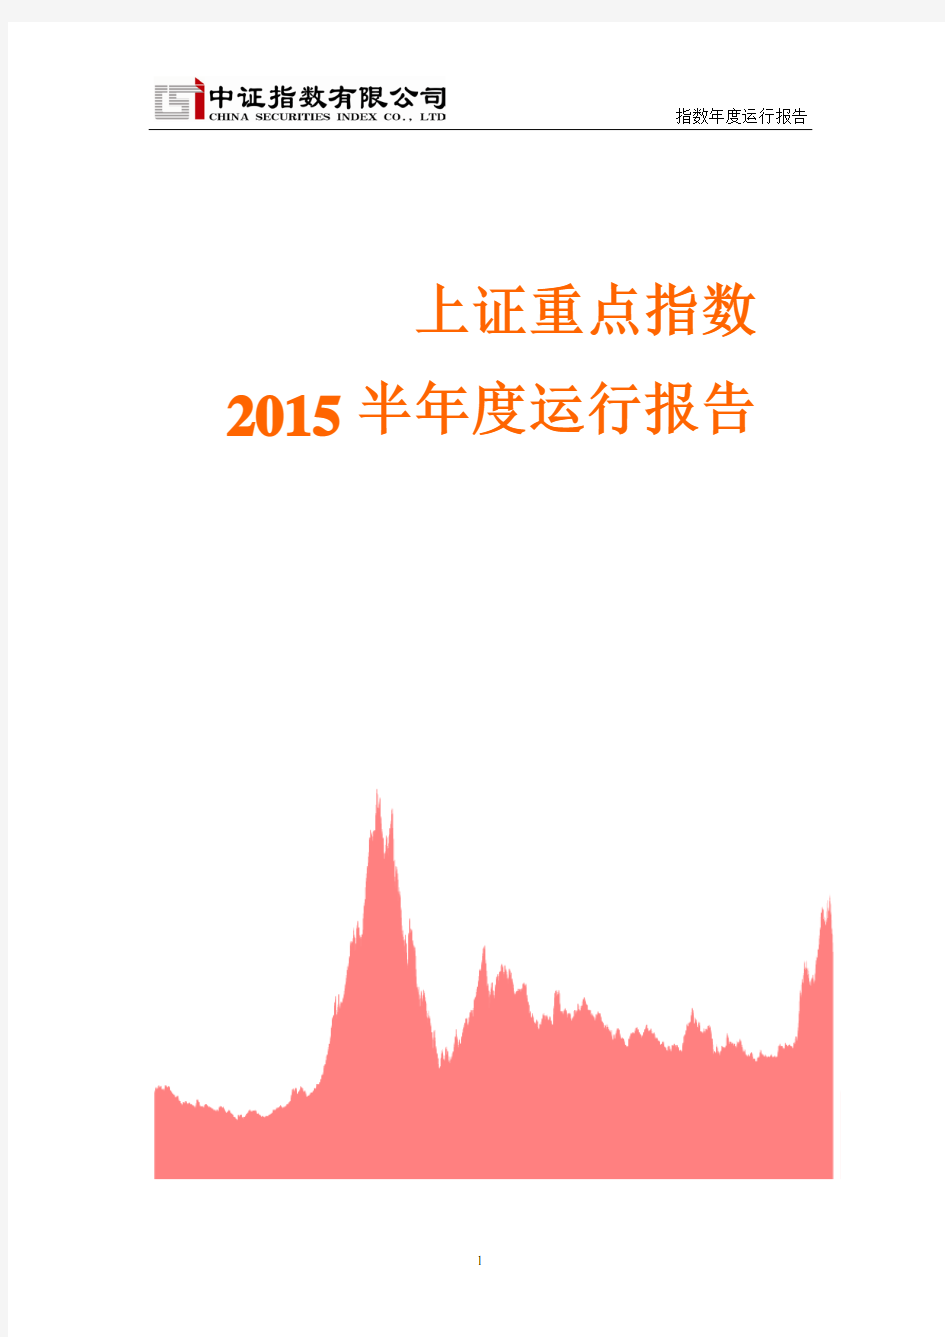 上证重点指数2015 半年度运行报告